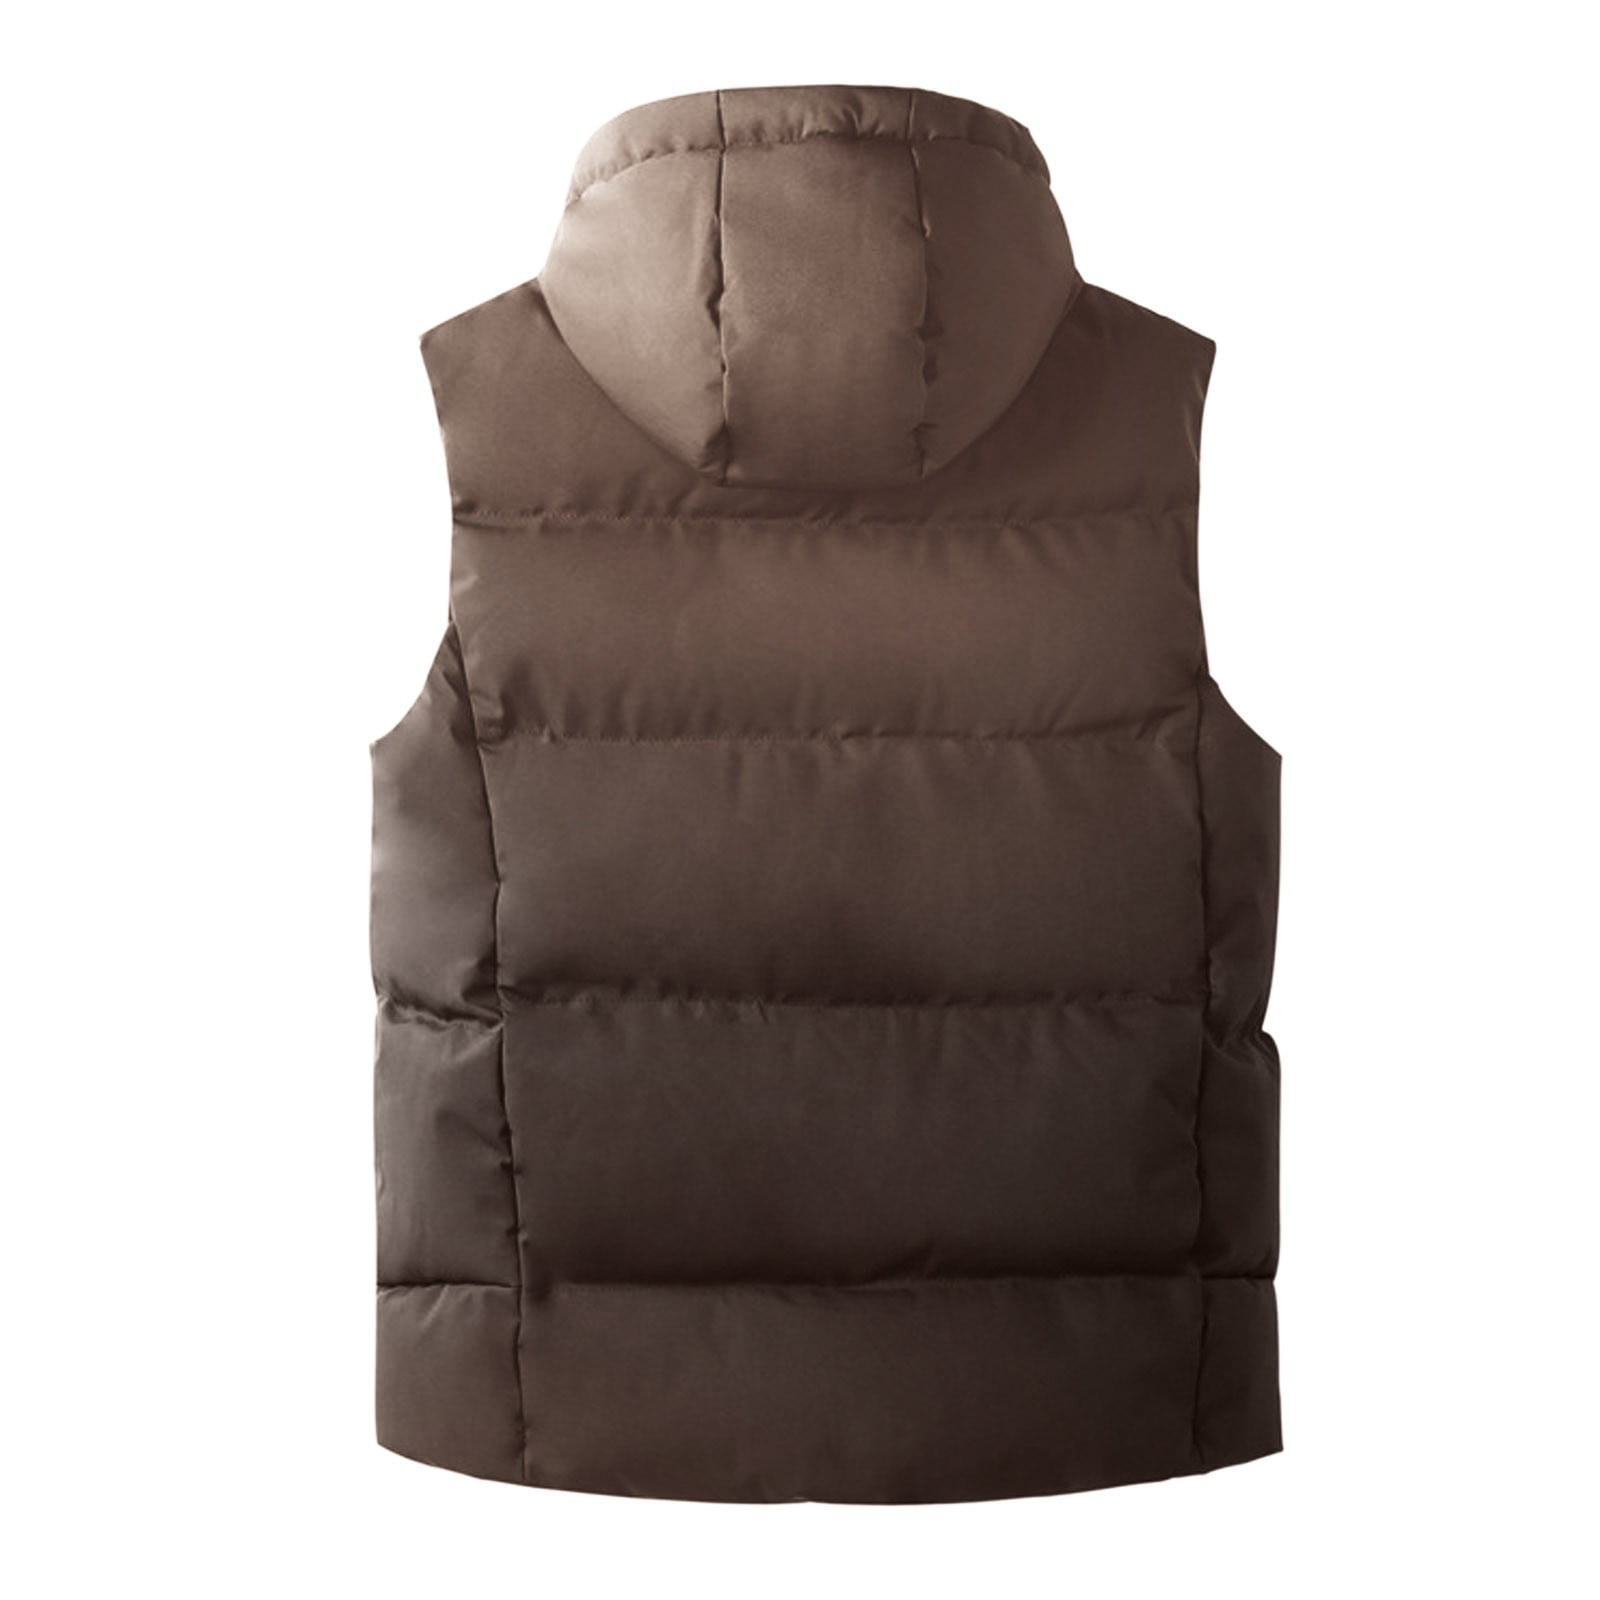 Vest Men's Warm Hooded Men's Cardigan Vest Zip With Pocket, 60% OFF